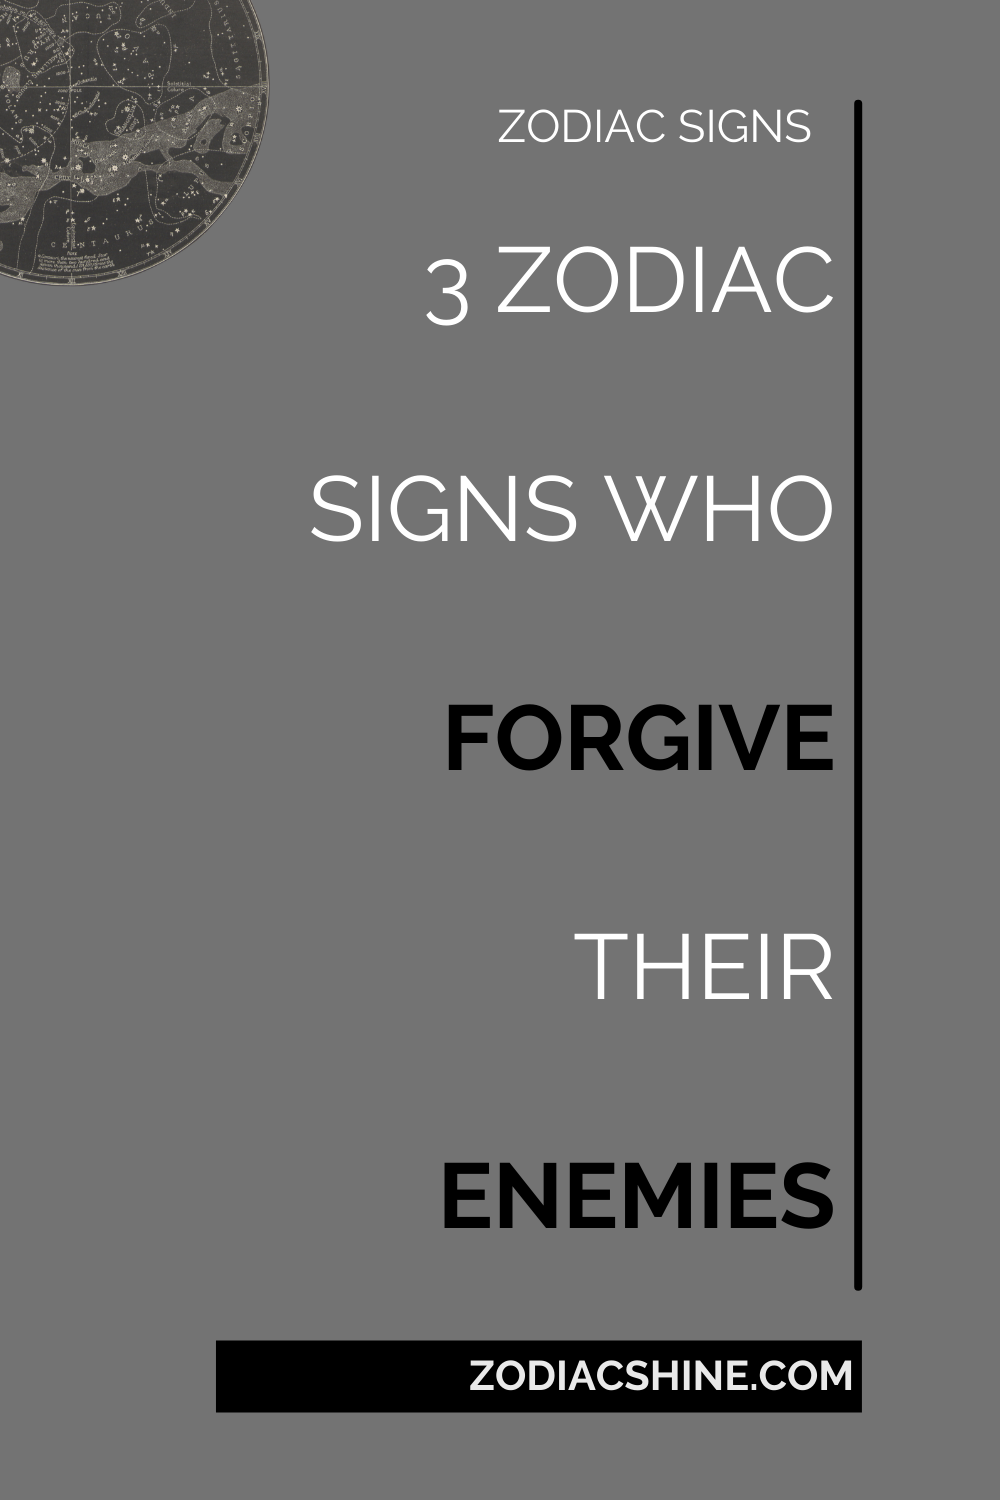 3 ZODIAC SIGNS WHO FORGIVE THEIR ENEMIES